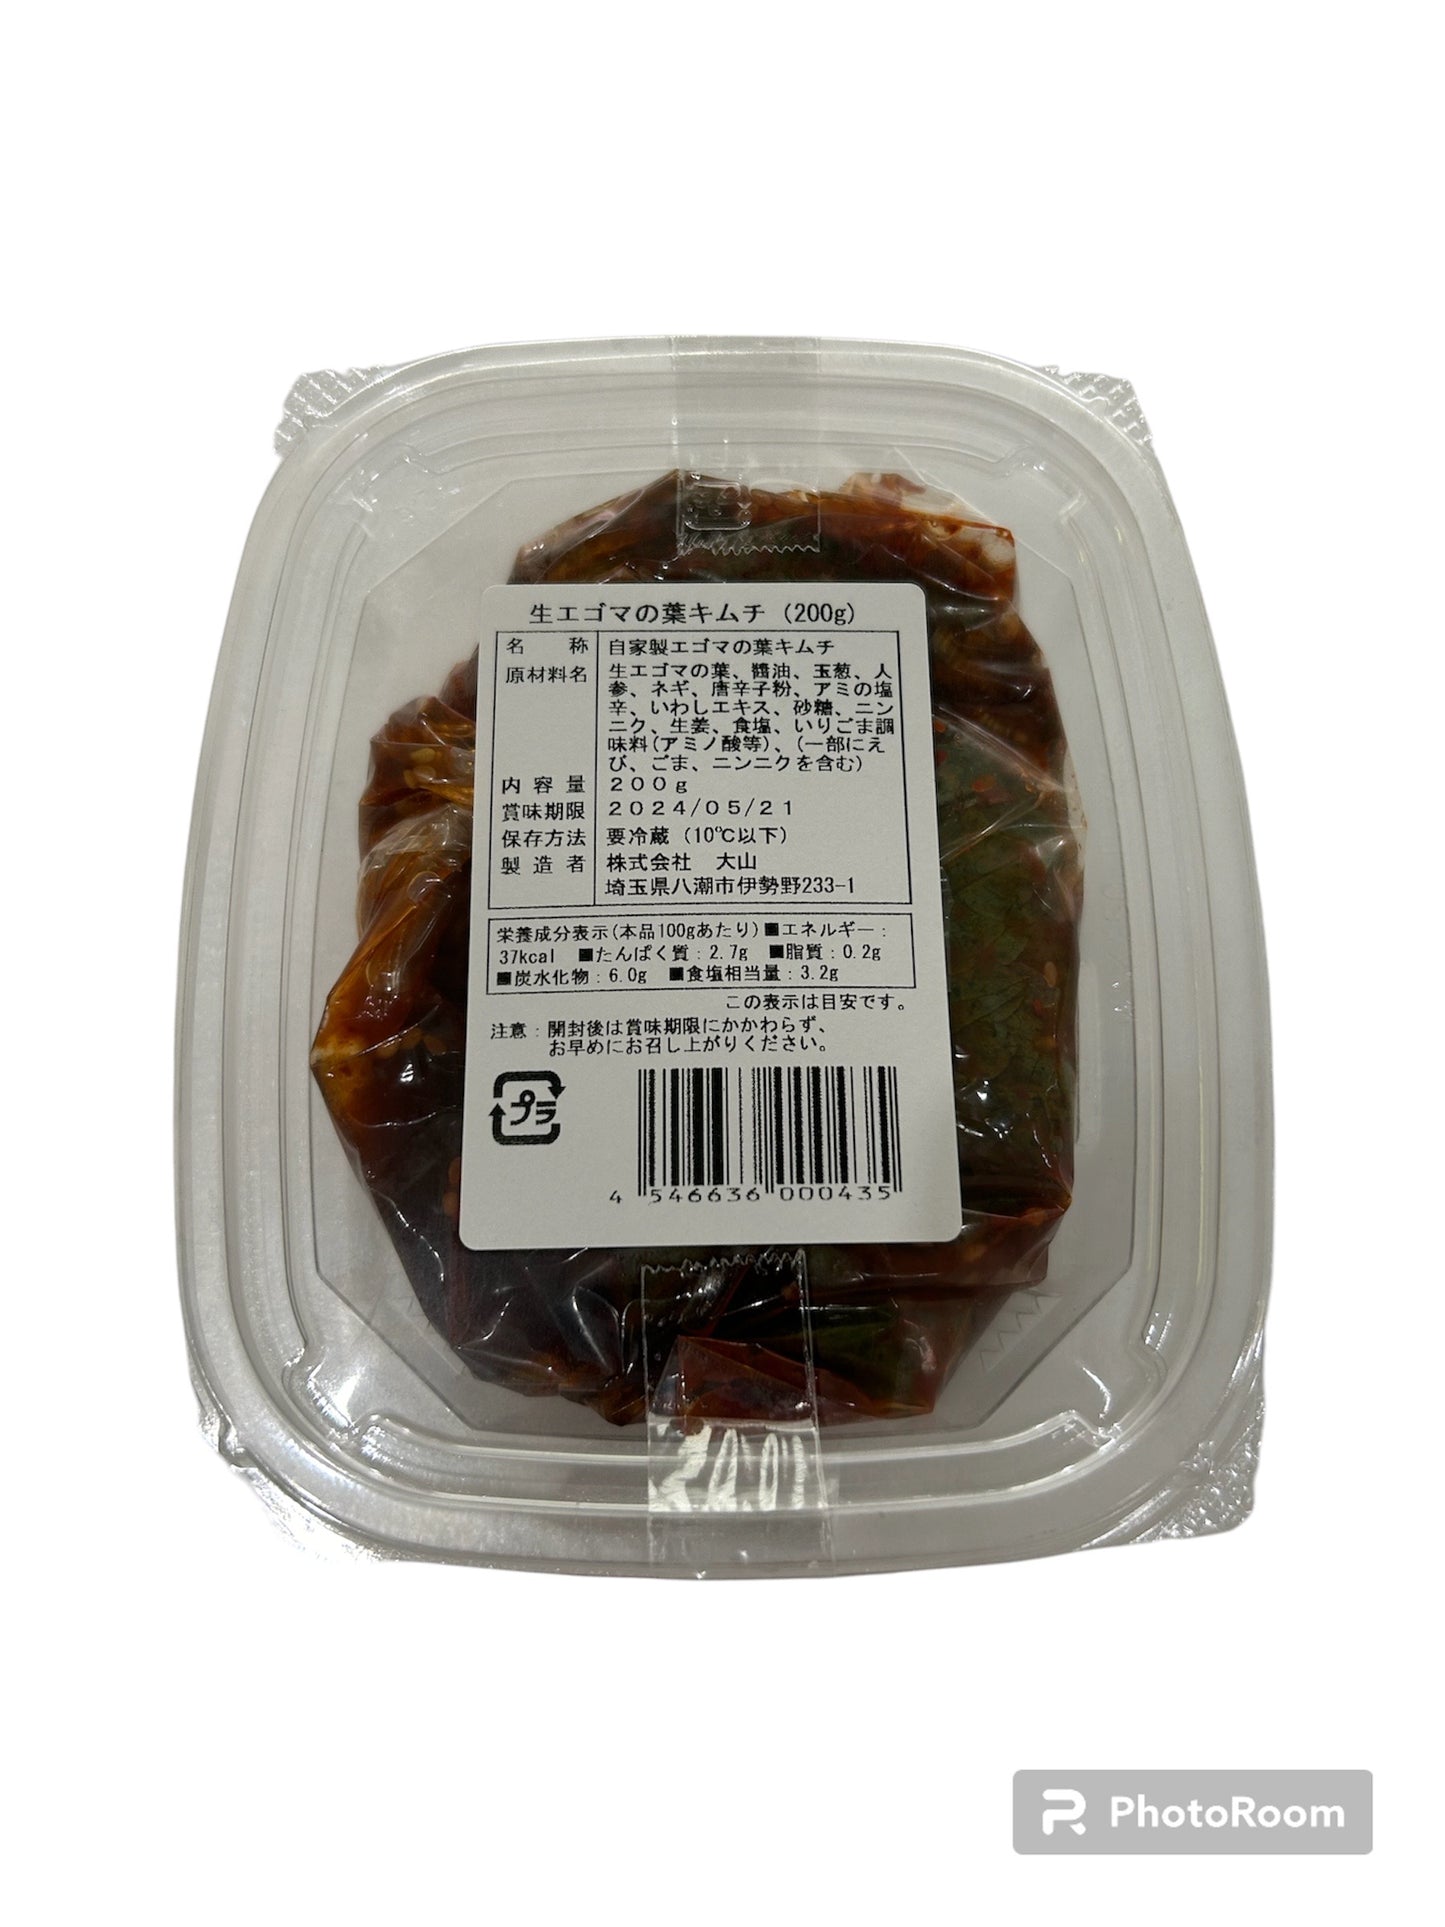 Refrigerated Perilla Leaf Kimchi 200g